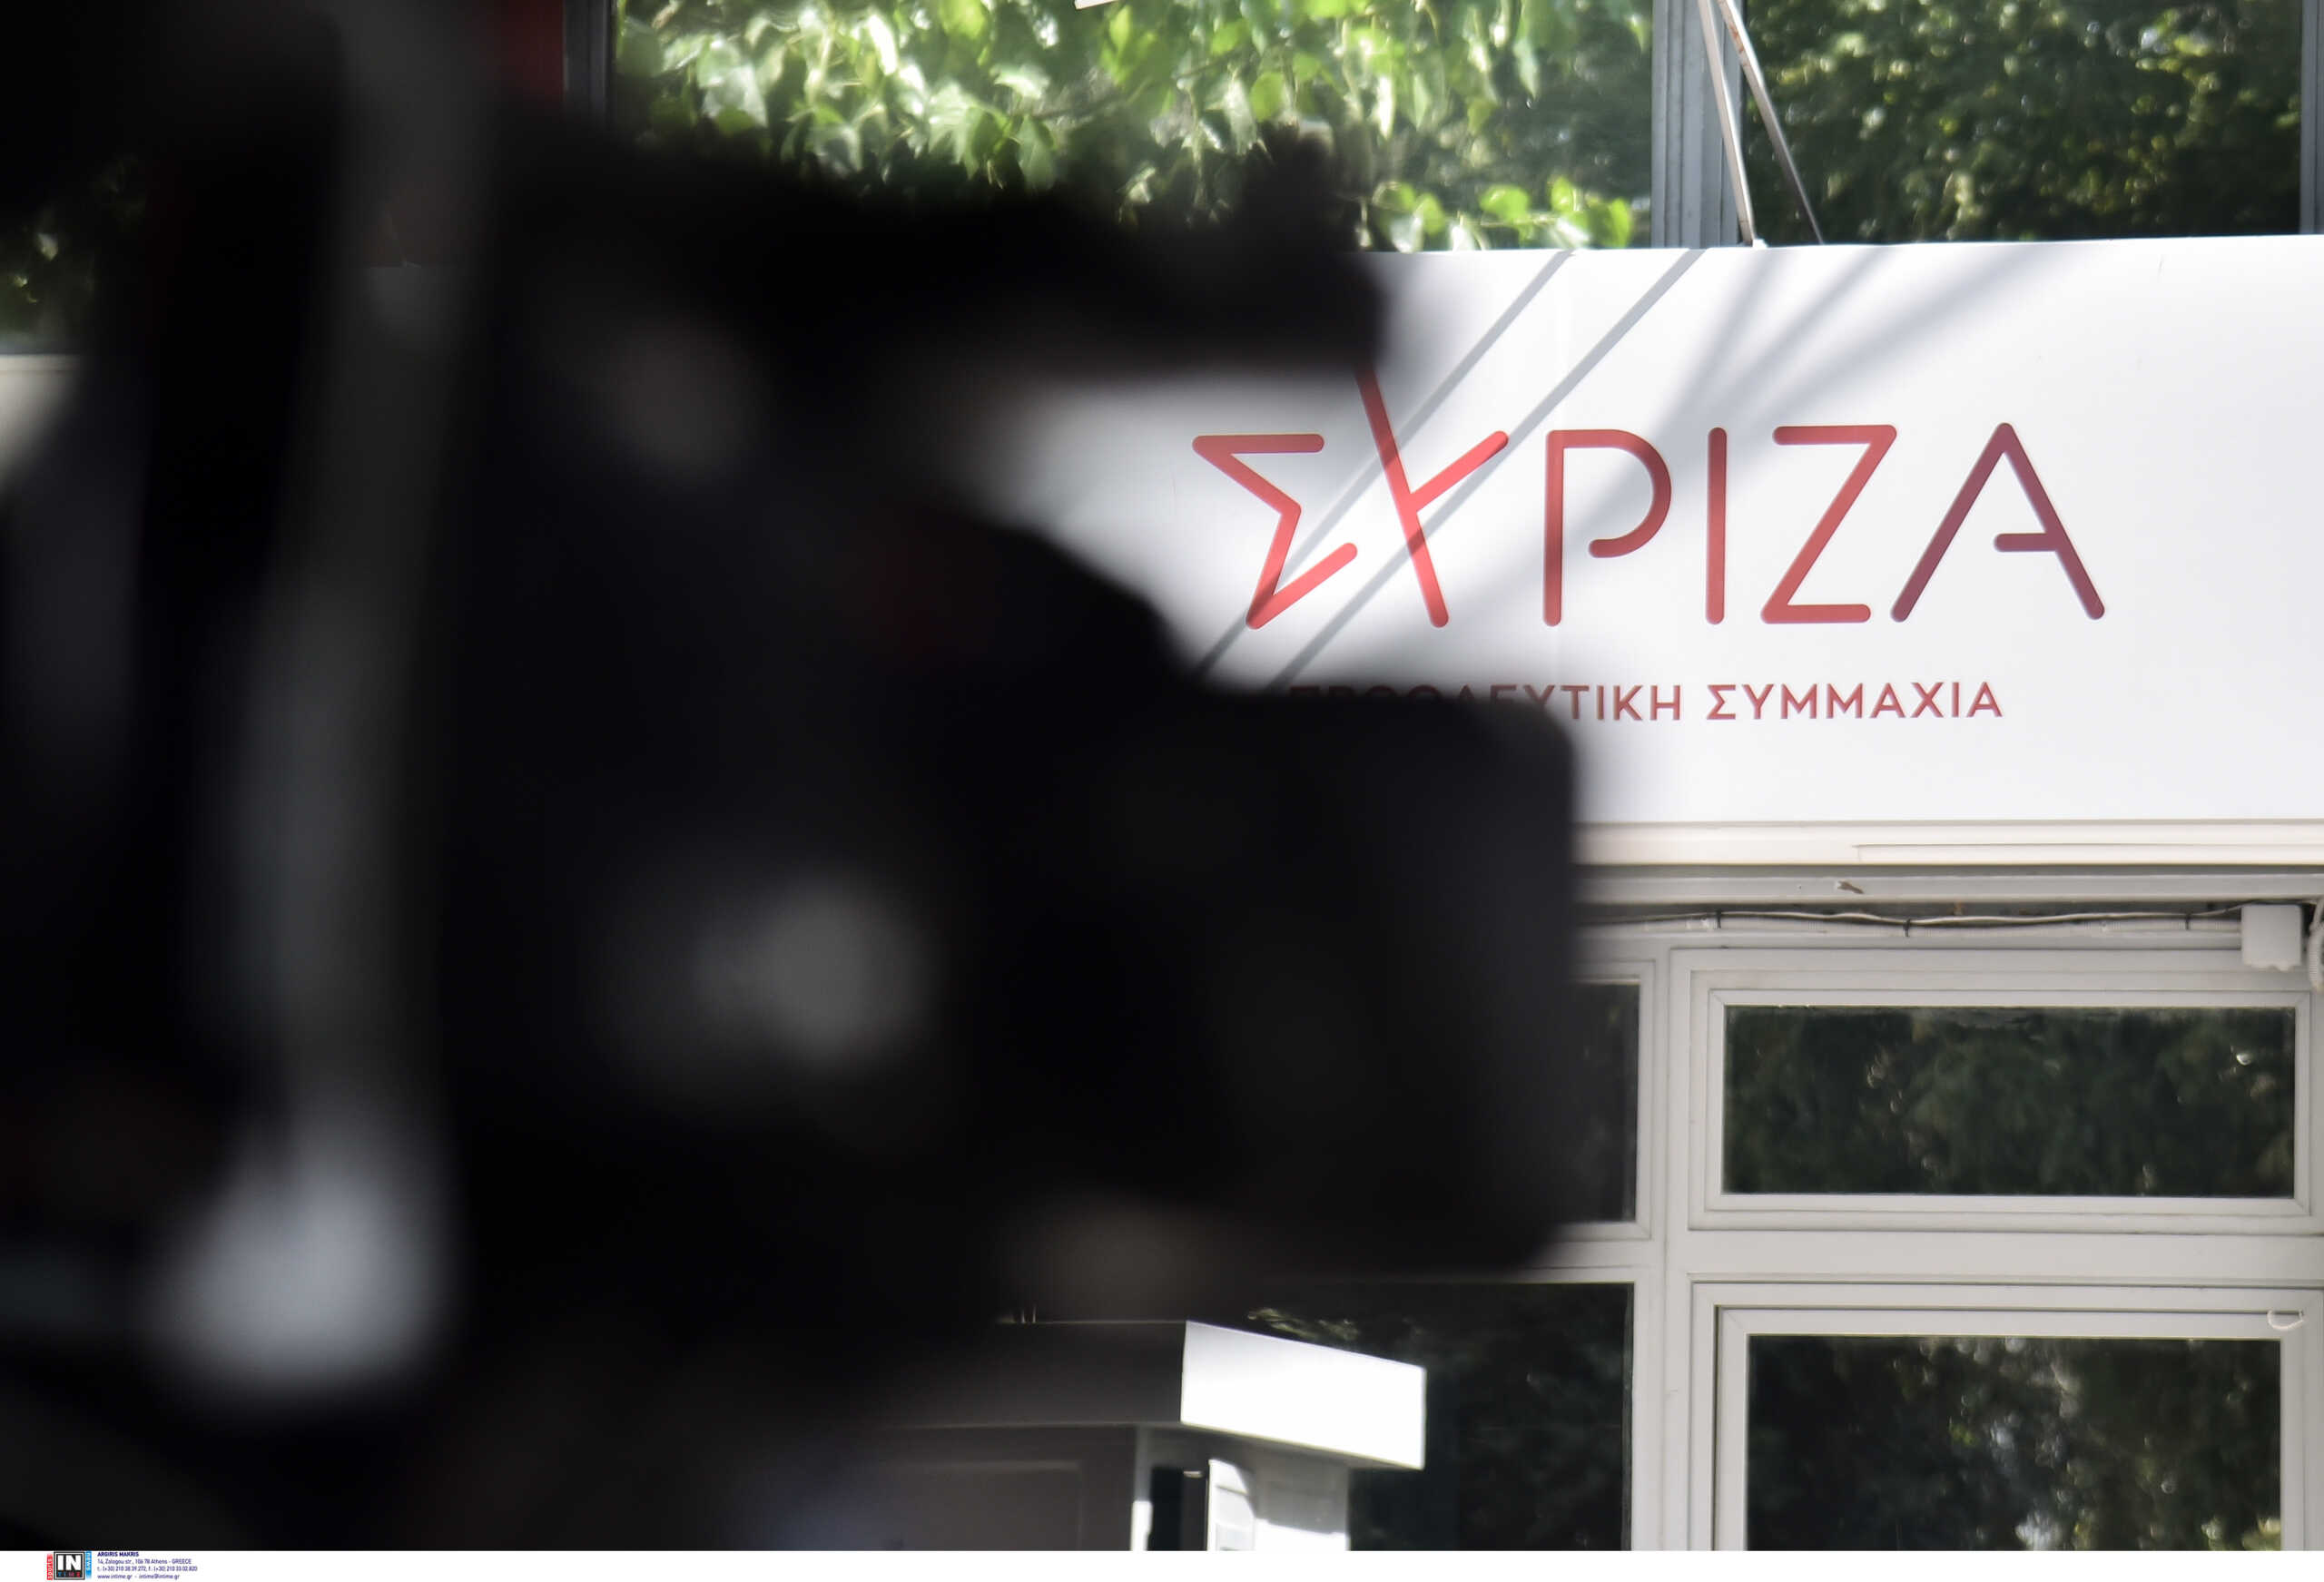 Αυτοδιοικητικές εκλογές 2023: Ποιους υποψήφιους στηρίζει ο ΣΥΡΙΖΑ σε Δήμους και Περιφέρειες